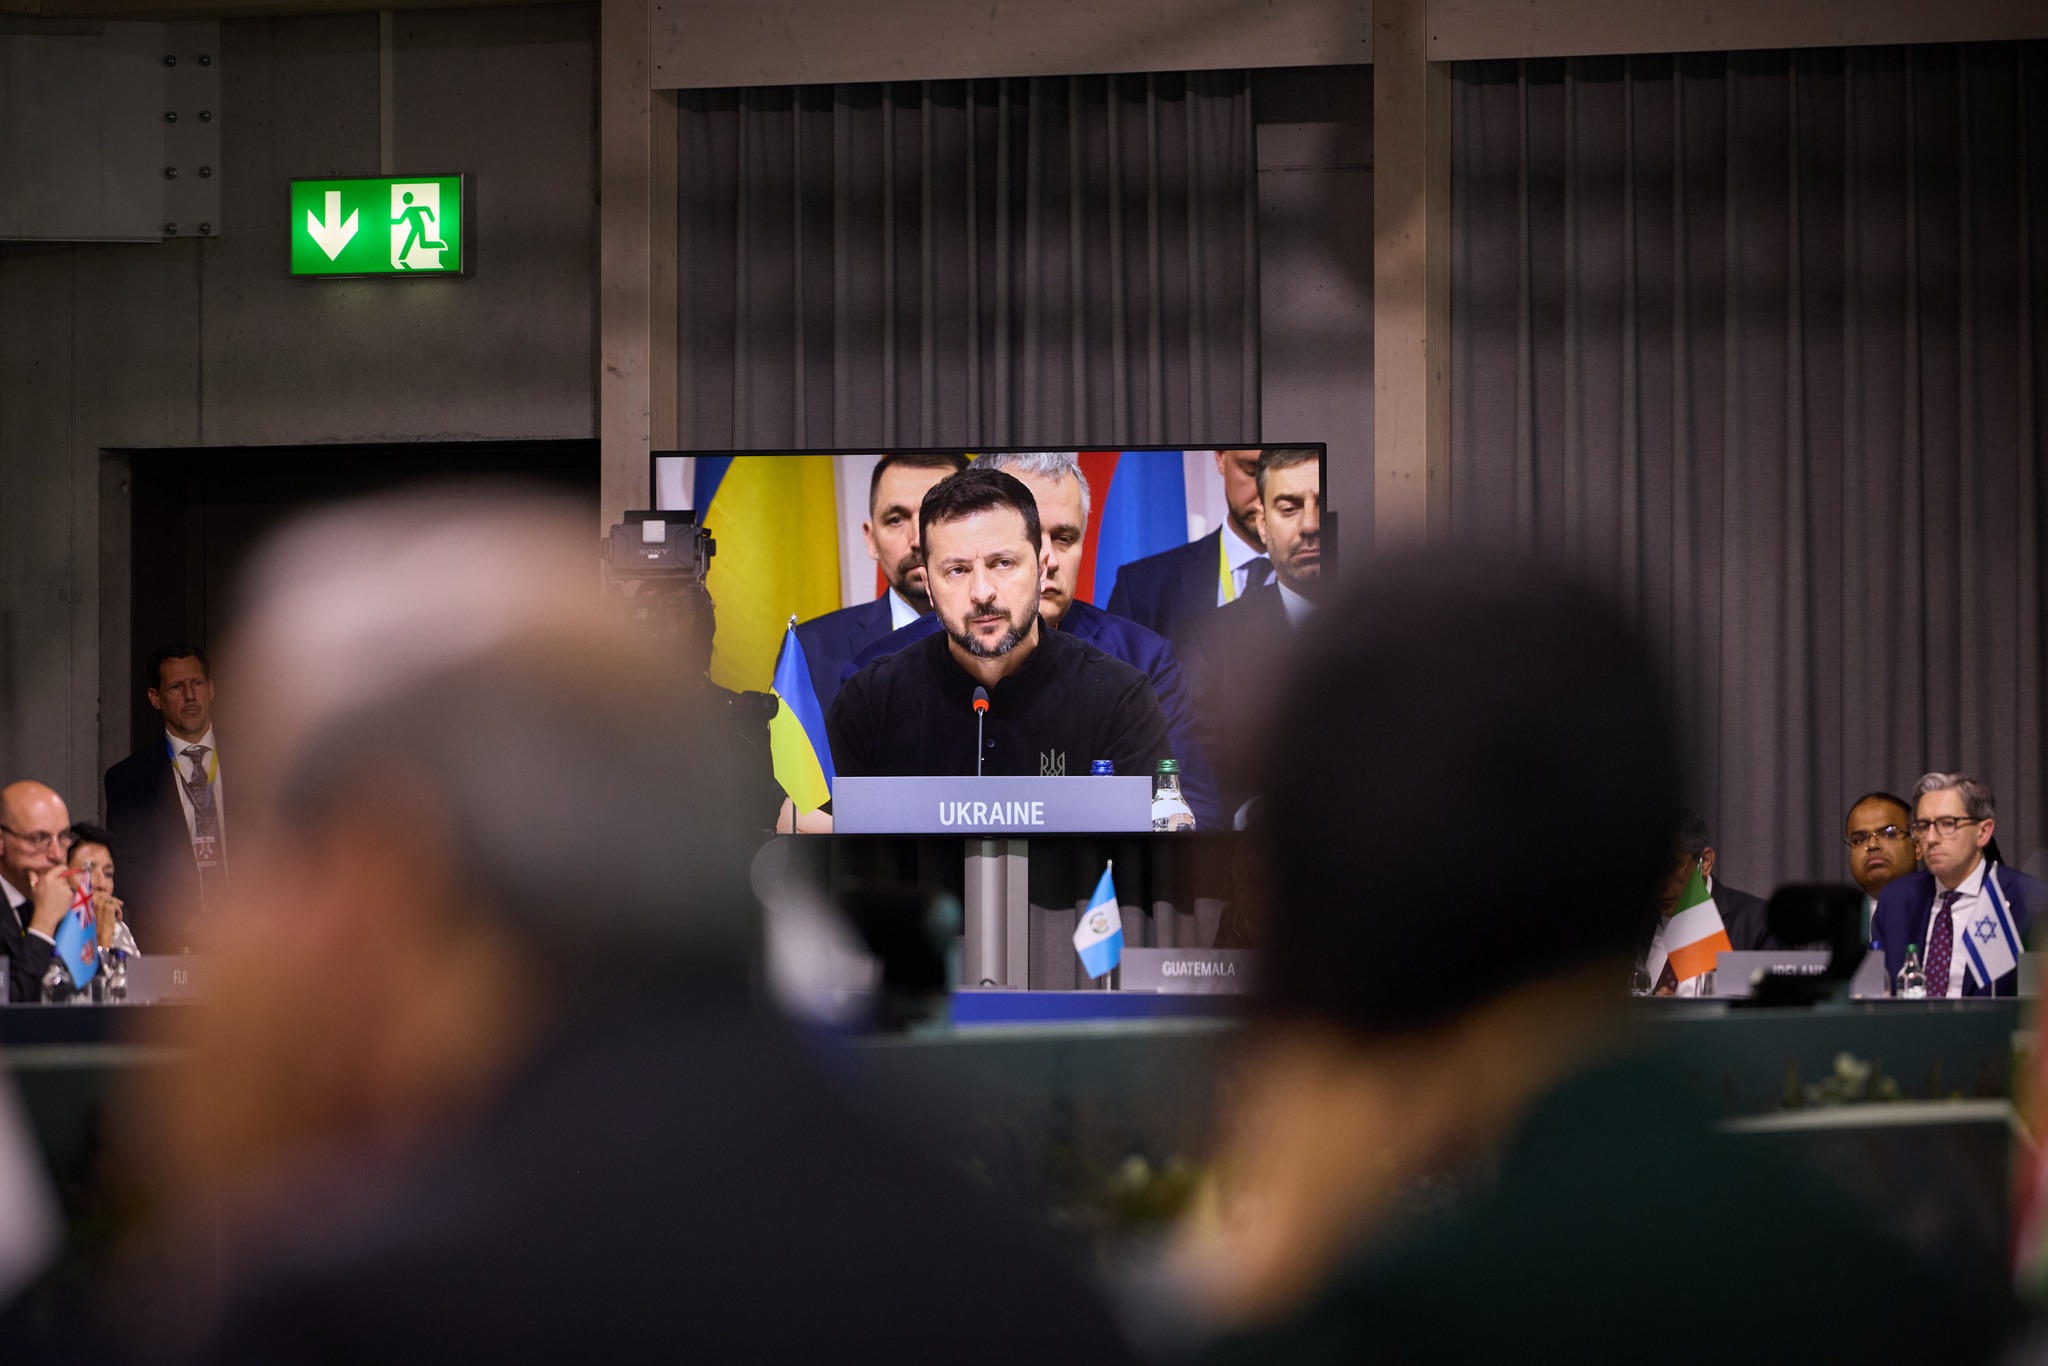 在瑞士舉行的烏克蘭峰會日前剛落幕，但和平仍遙遙無期，螢幕內為烏克蘭總統澤倫斯基。圖/取自Volodymyr Zelensky臉書